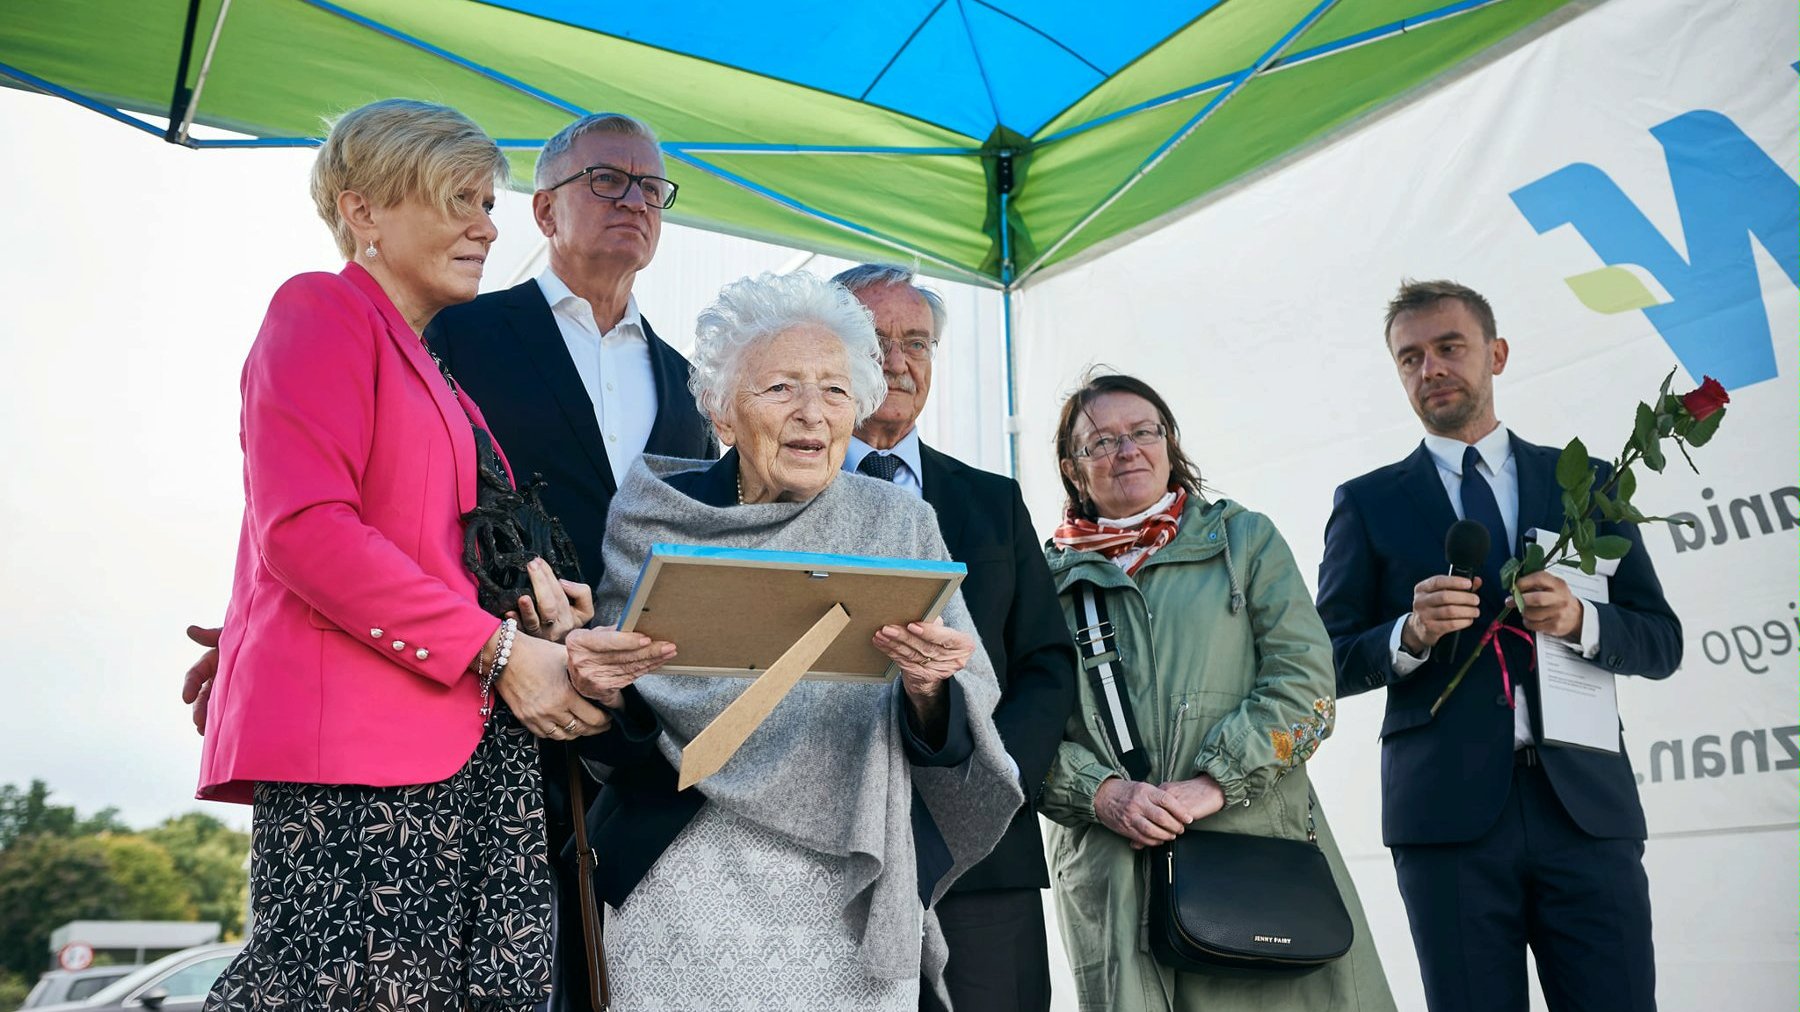 Na zdjęciu prezydent Poznania z seniorami, mężczyzna trzyma mikrofon i różę, kobieta trzyma ramkę ze zdjęciem